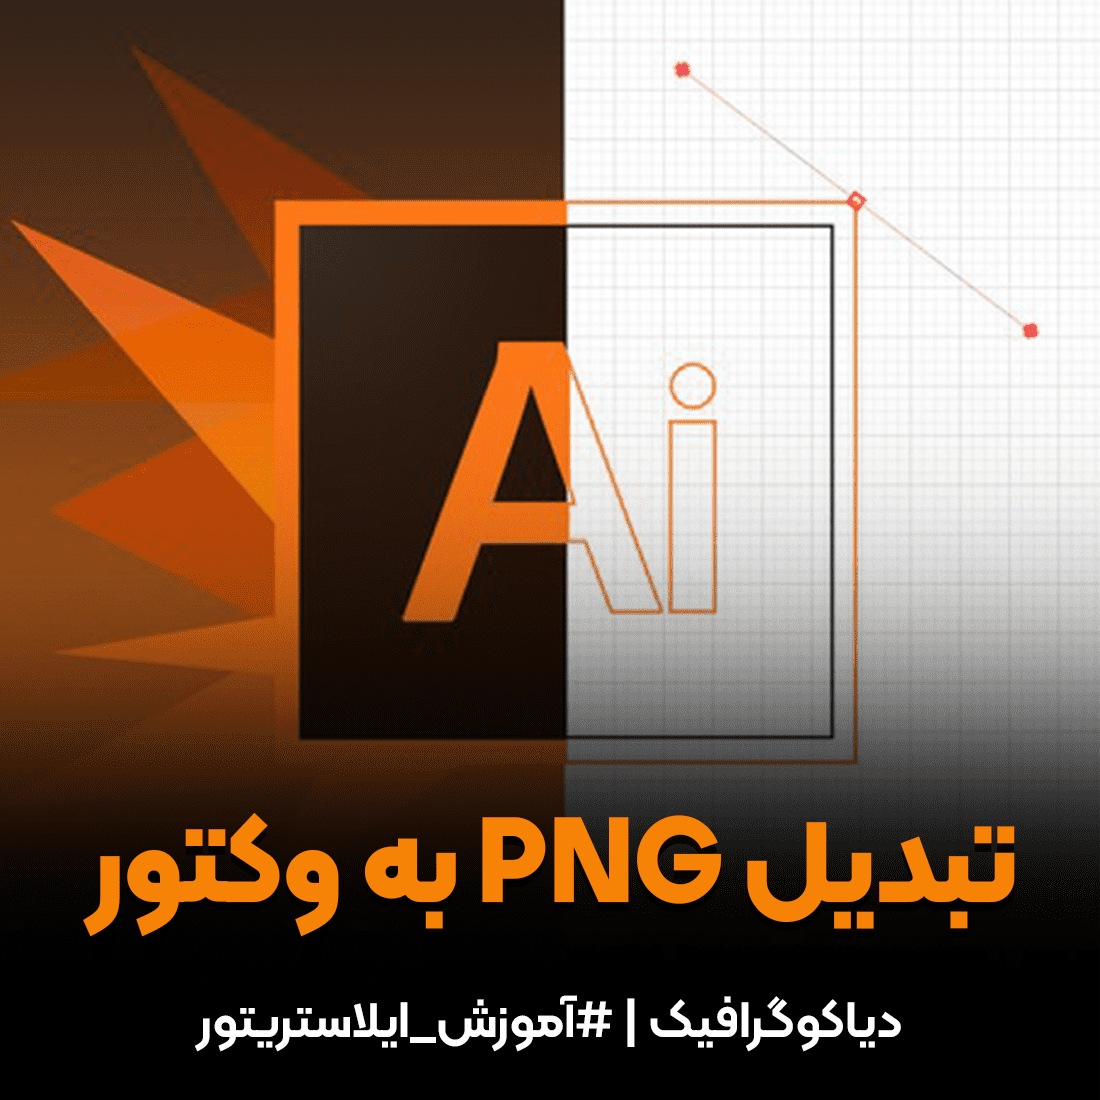 تبدیل png به وکتور با برنامه کاربردی adobe Illustrator